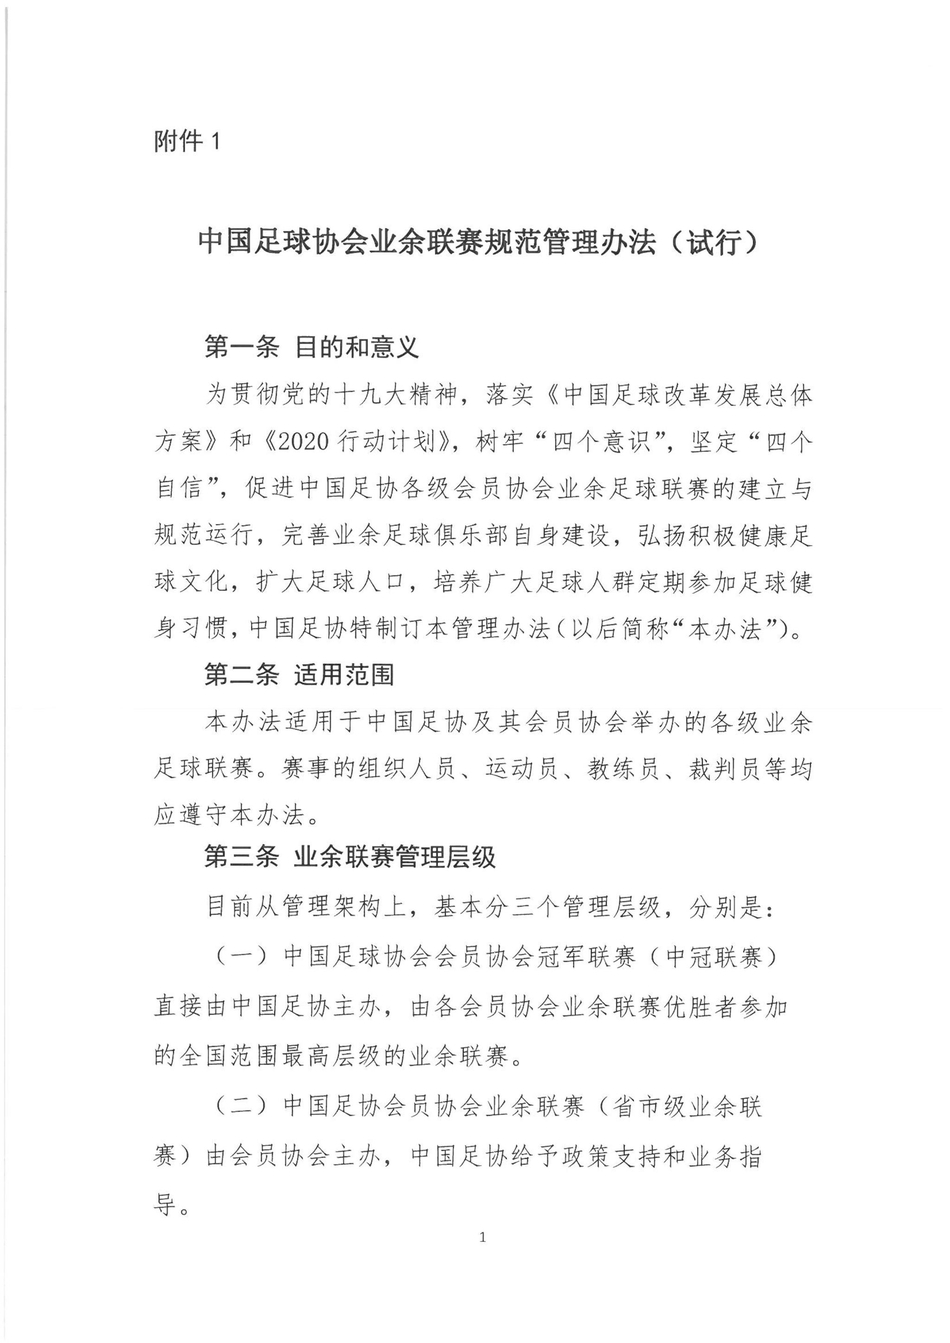 北京时间1月23日，足协下发正式文件《中国足球协会业余联赛规范管理办法（试行）》和《中国足球协会业余联赛评级管理办法（试行）》